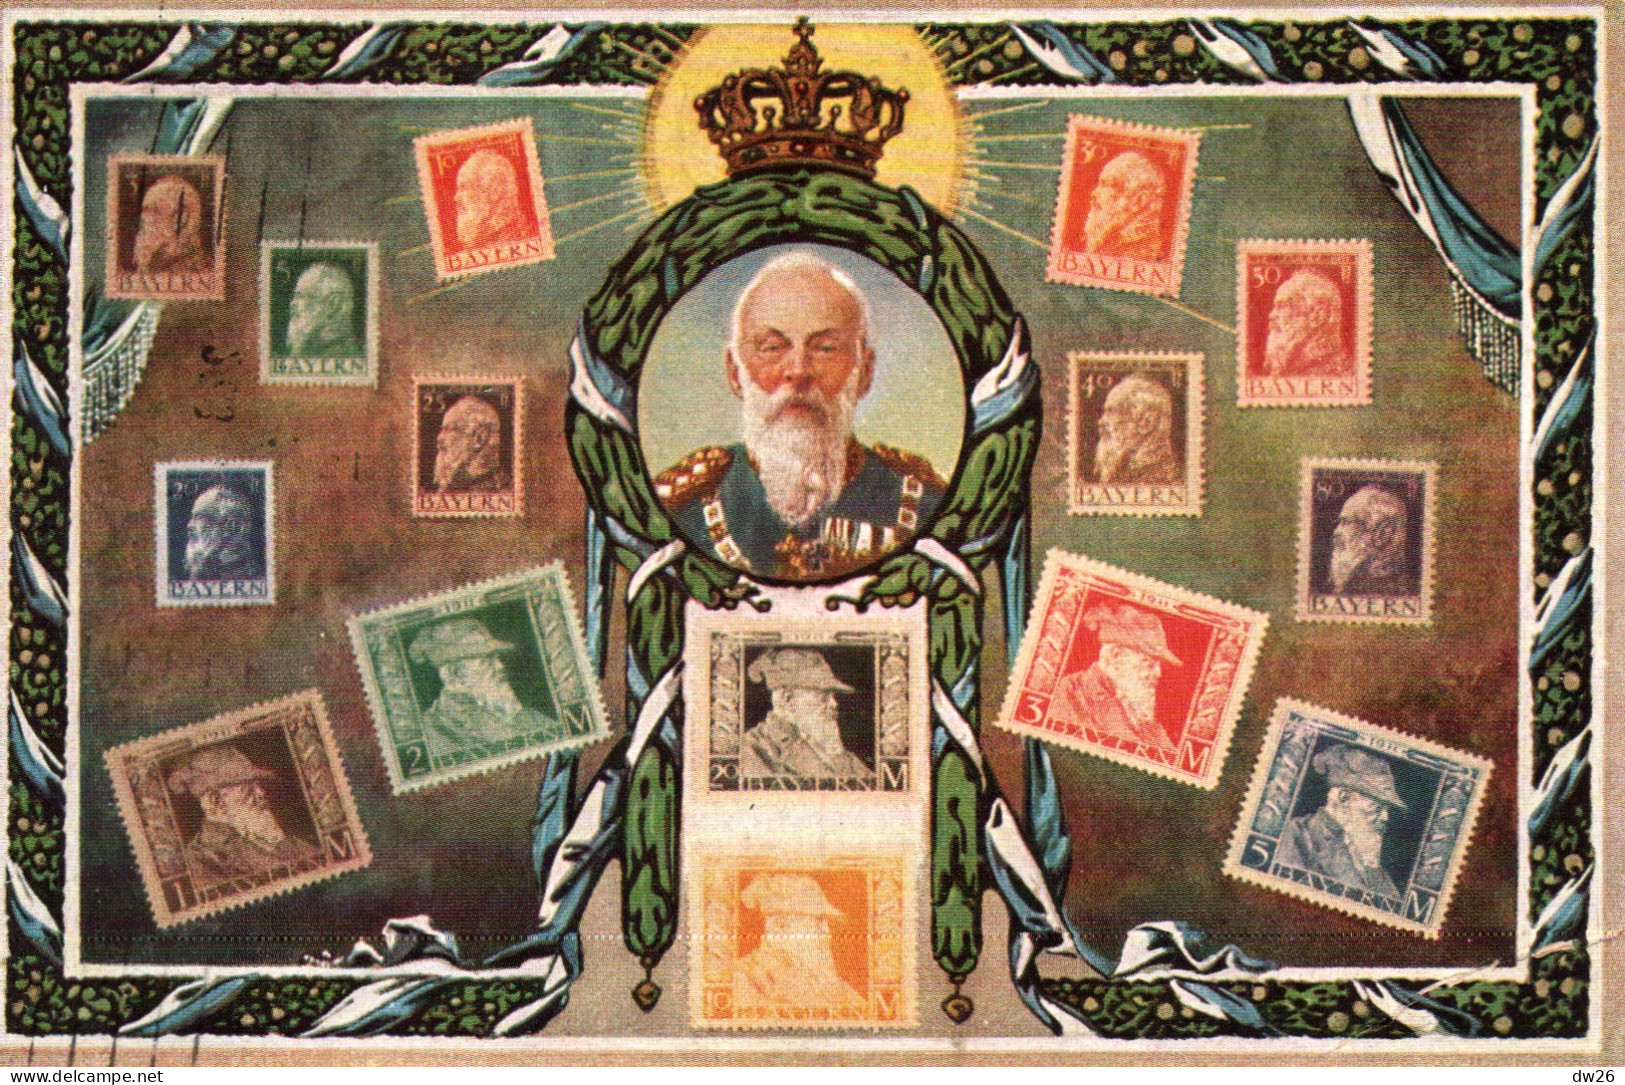 Représentation De Timbres: Stamps Bayern, Germany - Carte Ottmar Zieher N° 149 - Sellos (representaciones)